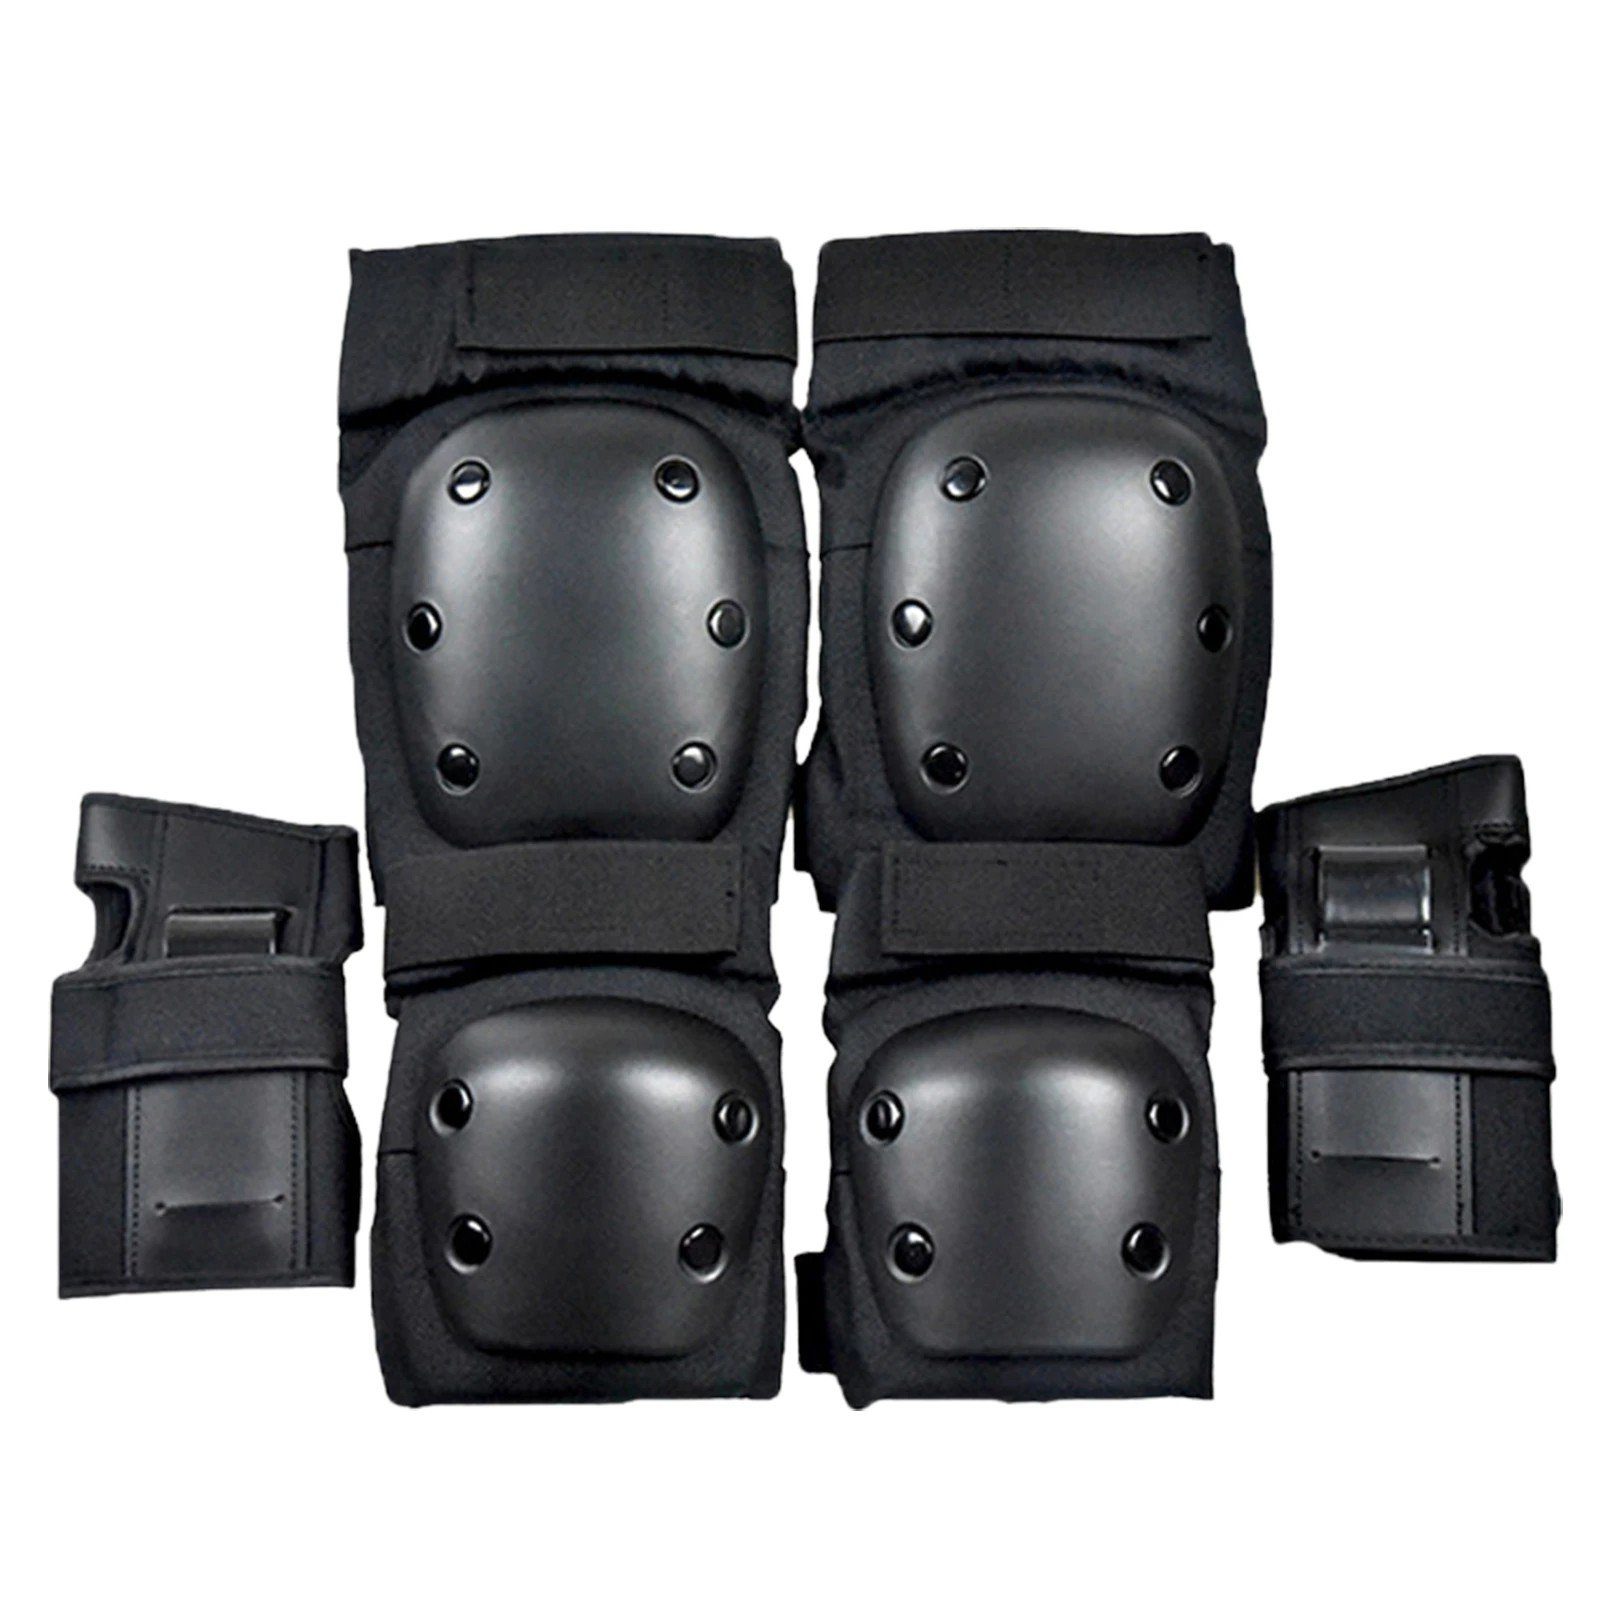 Protektoren Erwachsenen Schoner Knie Handgelenk Ellenbogen Schutzausrüstung Set 